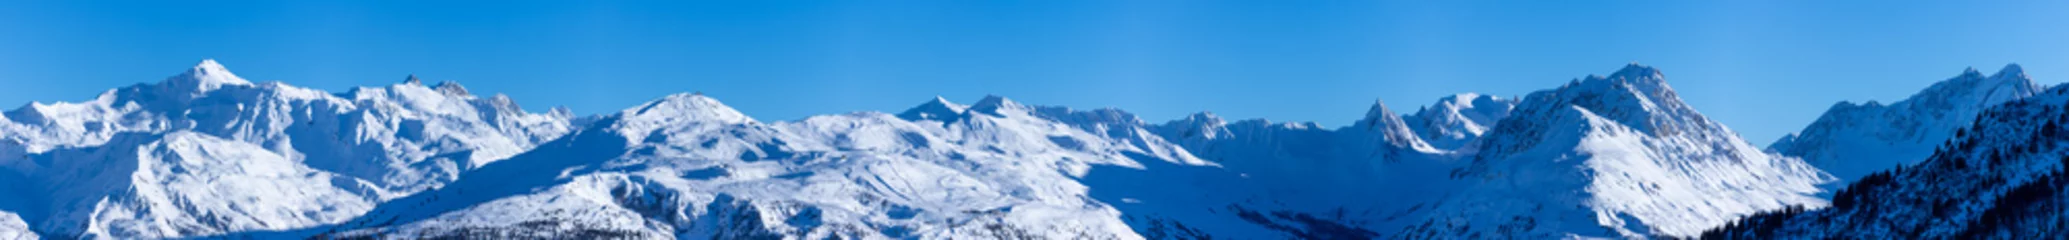 Foto op Aluminium vue ultra panoramique sur une chaîne de montagnes enneigées des alpes © Tof - Photographie